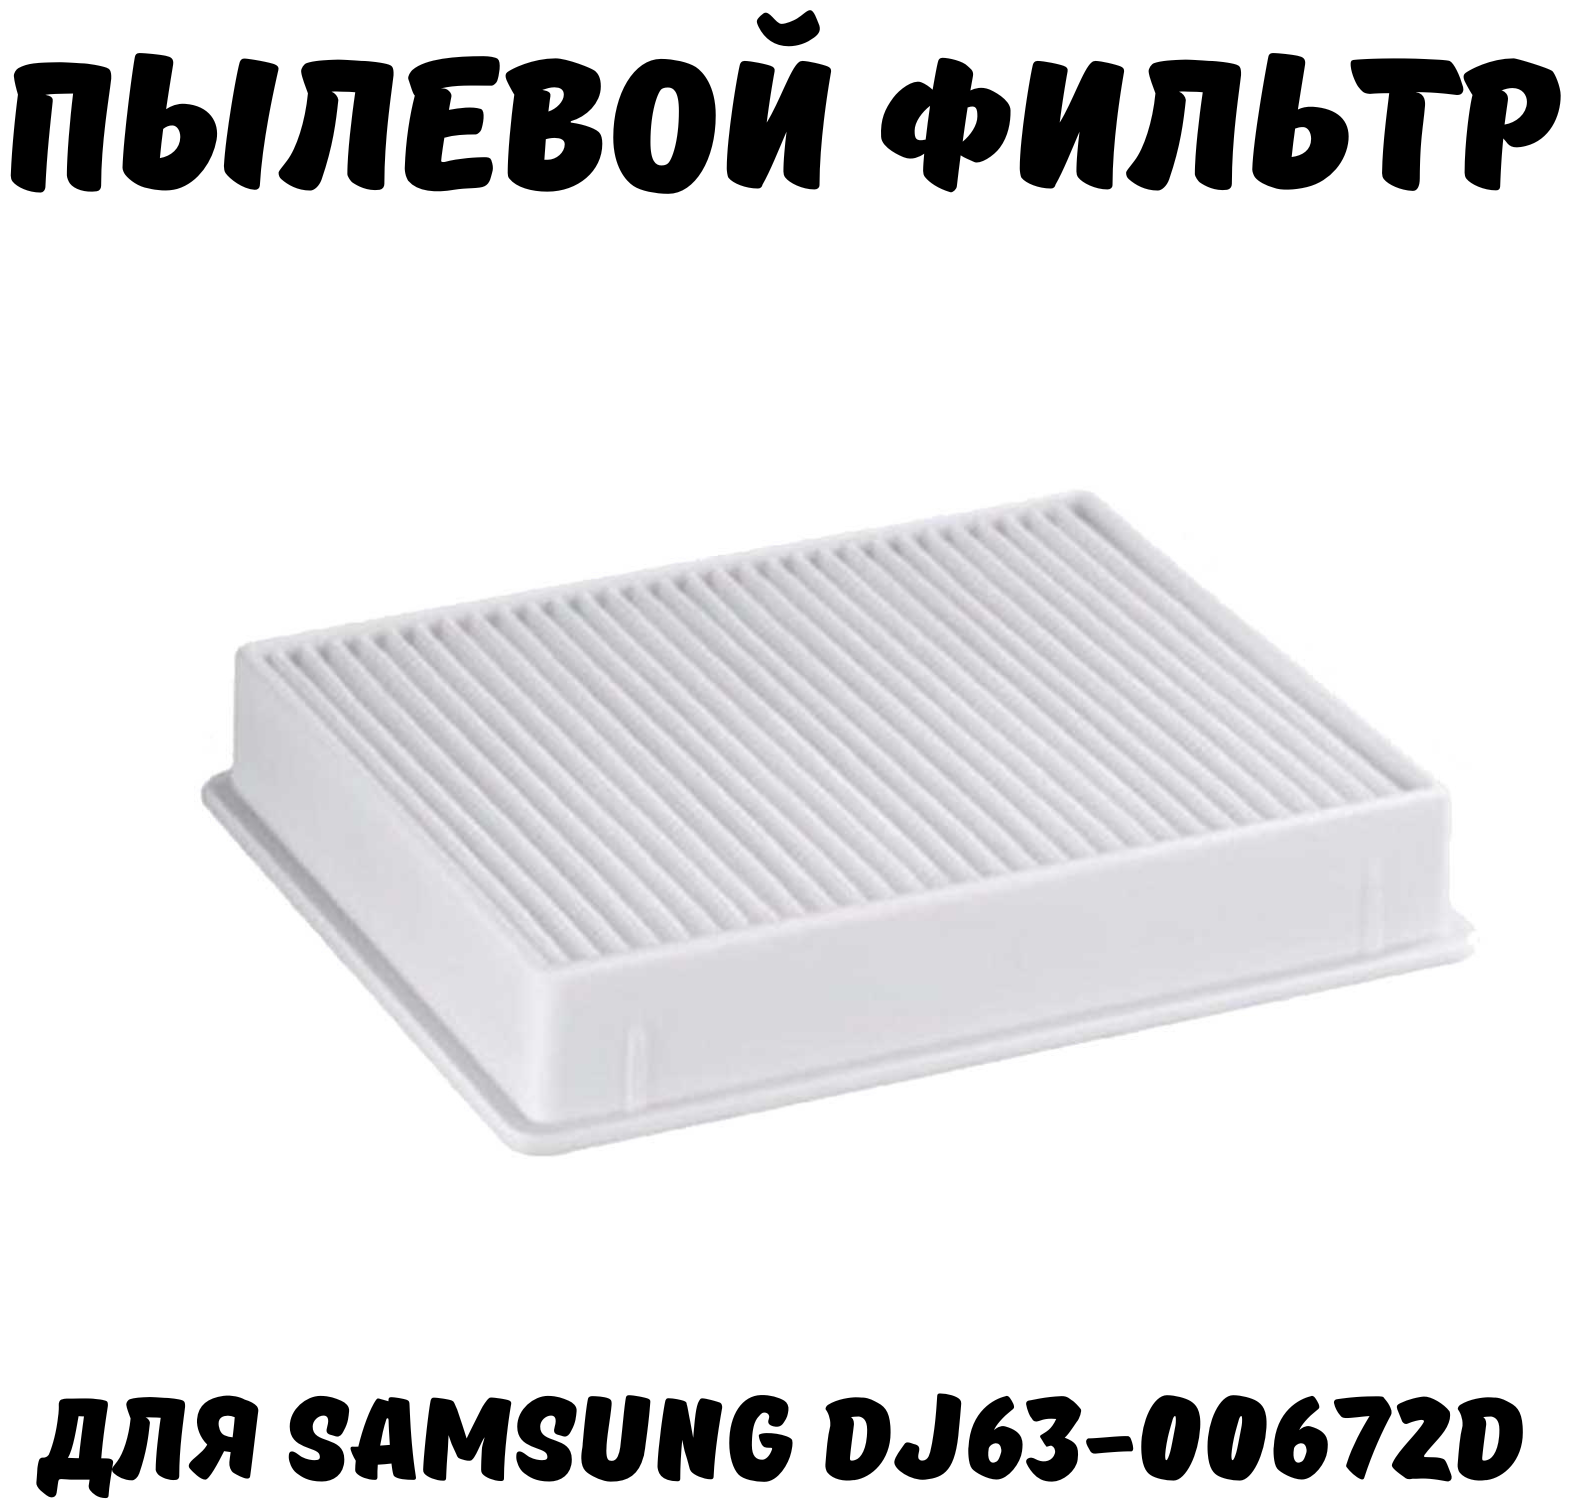 Набор фильтров HEPA + поролоновый/губчатый для пылесоса Самсунг Samsung SC4520, SC4326, SC4760, SC432A, DJ97